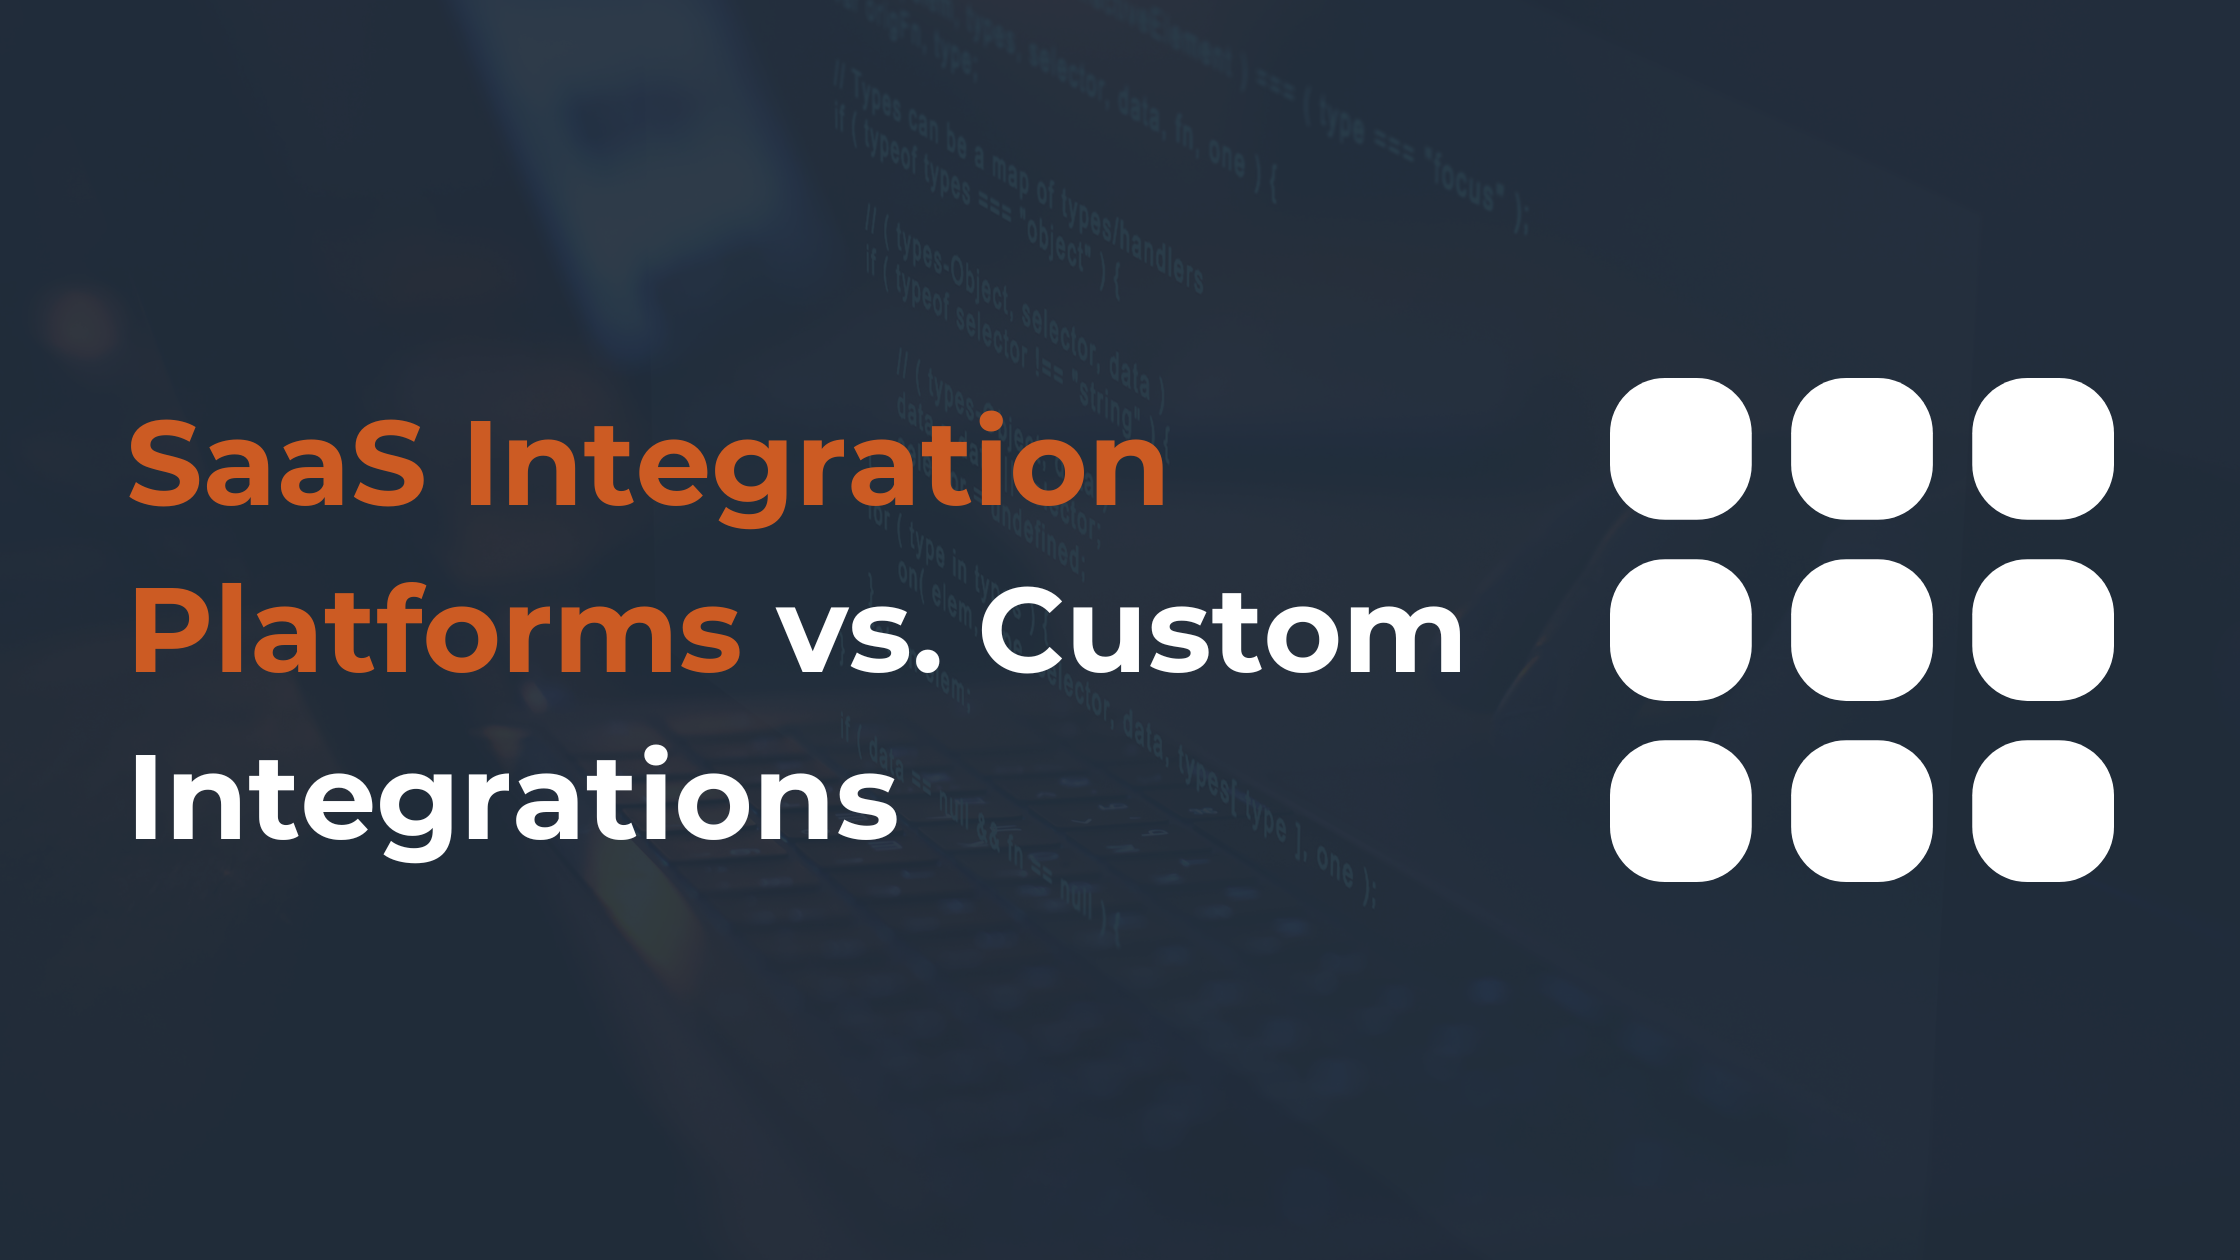 SaaS Integration Platforms vs. Custom Integrations